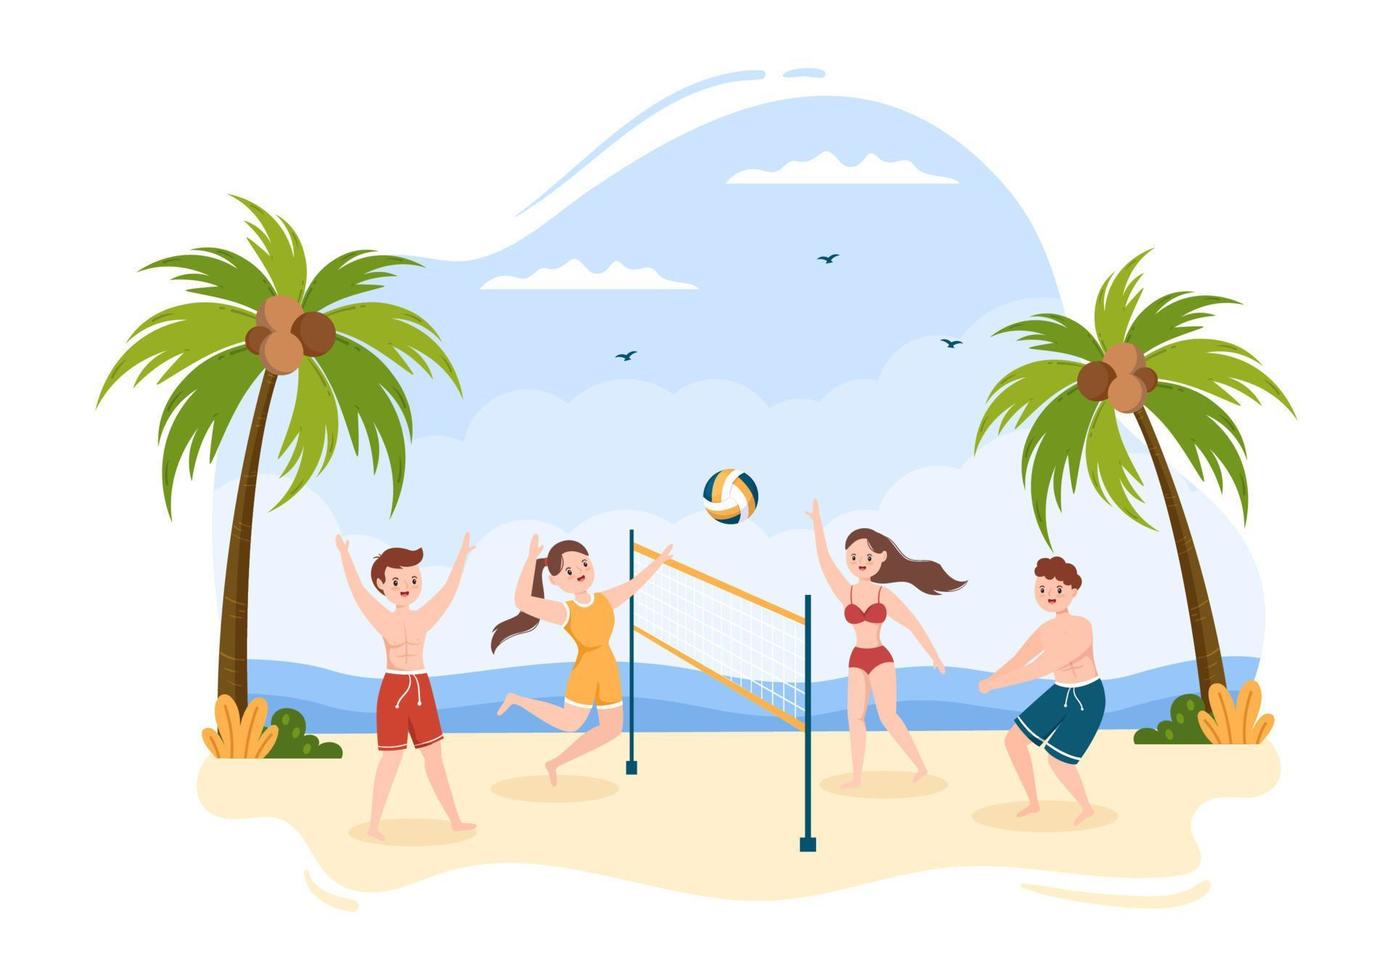 giocatore di beach volley all'attacco per serie di competizioni sportive all'aperto nell'illustrazione piana del fumetto vettore